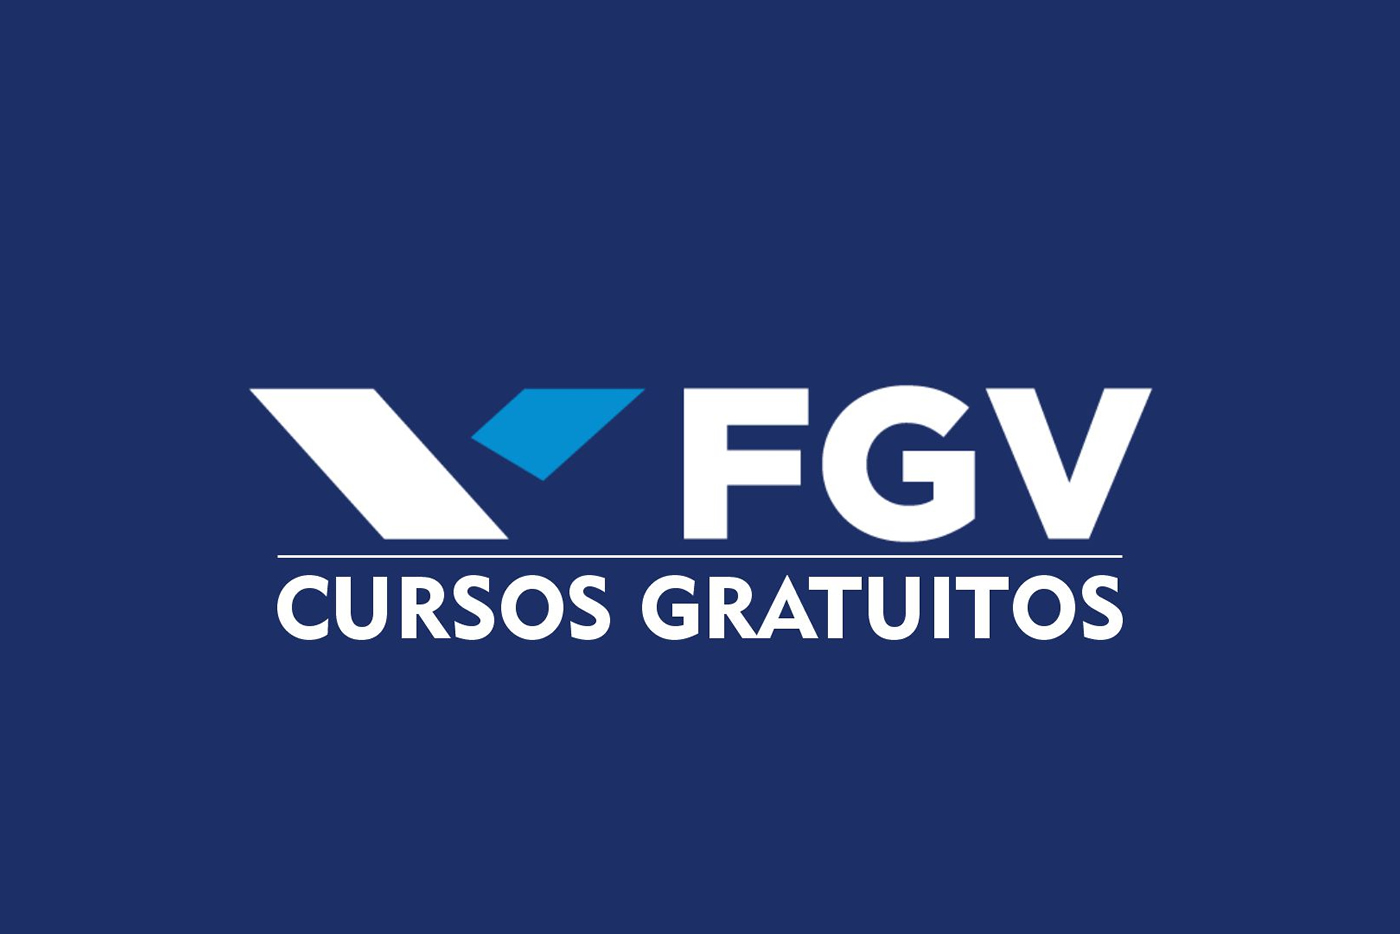 A FGV possui uma variedade de cursos gratuitos em diversas áreas